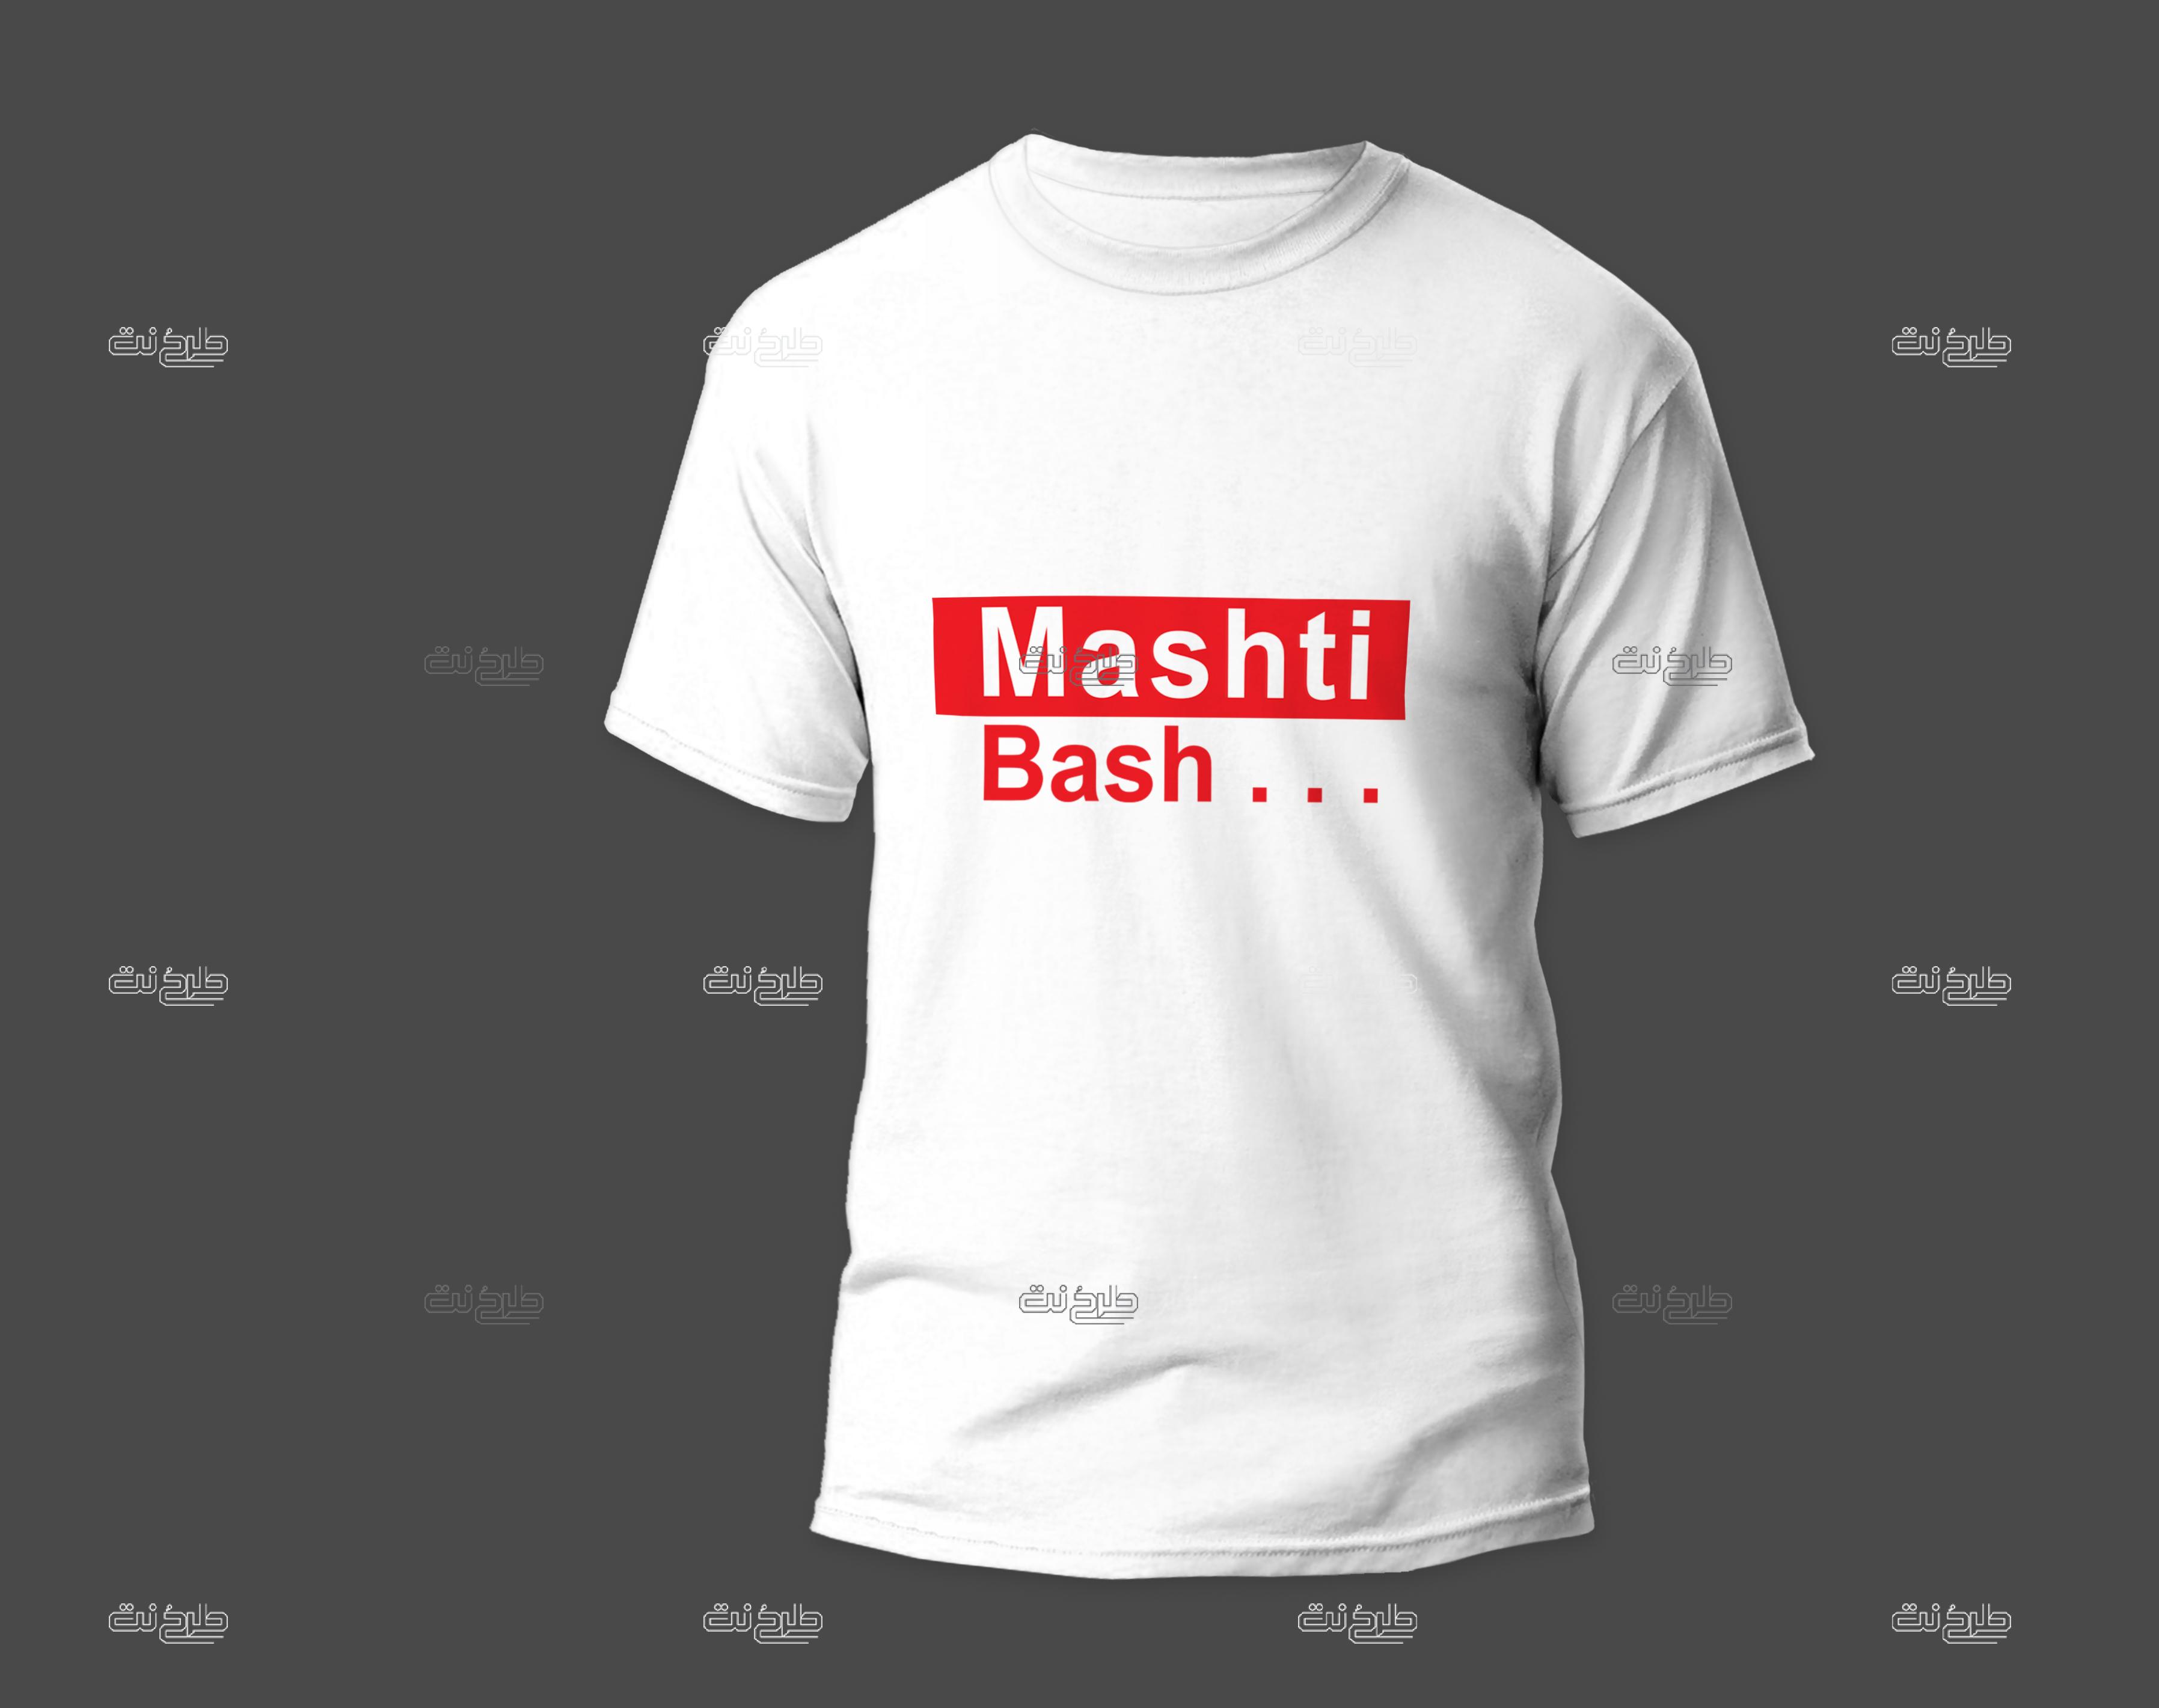 دانلود طرح لایه باز تیشرت با متن "Mashti Bash"